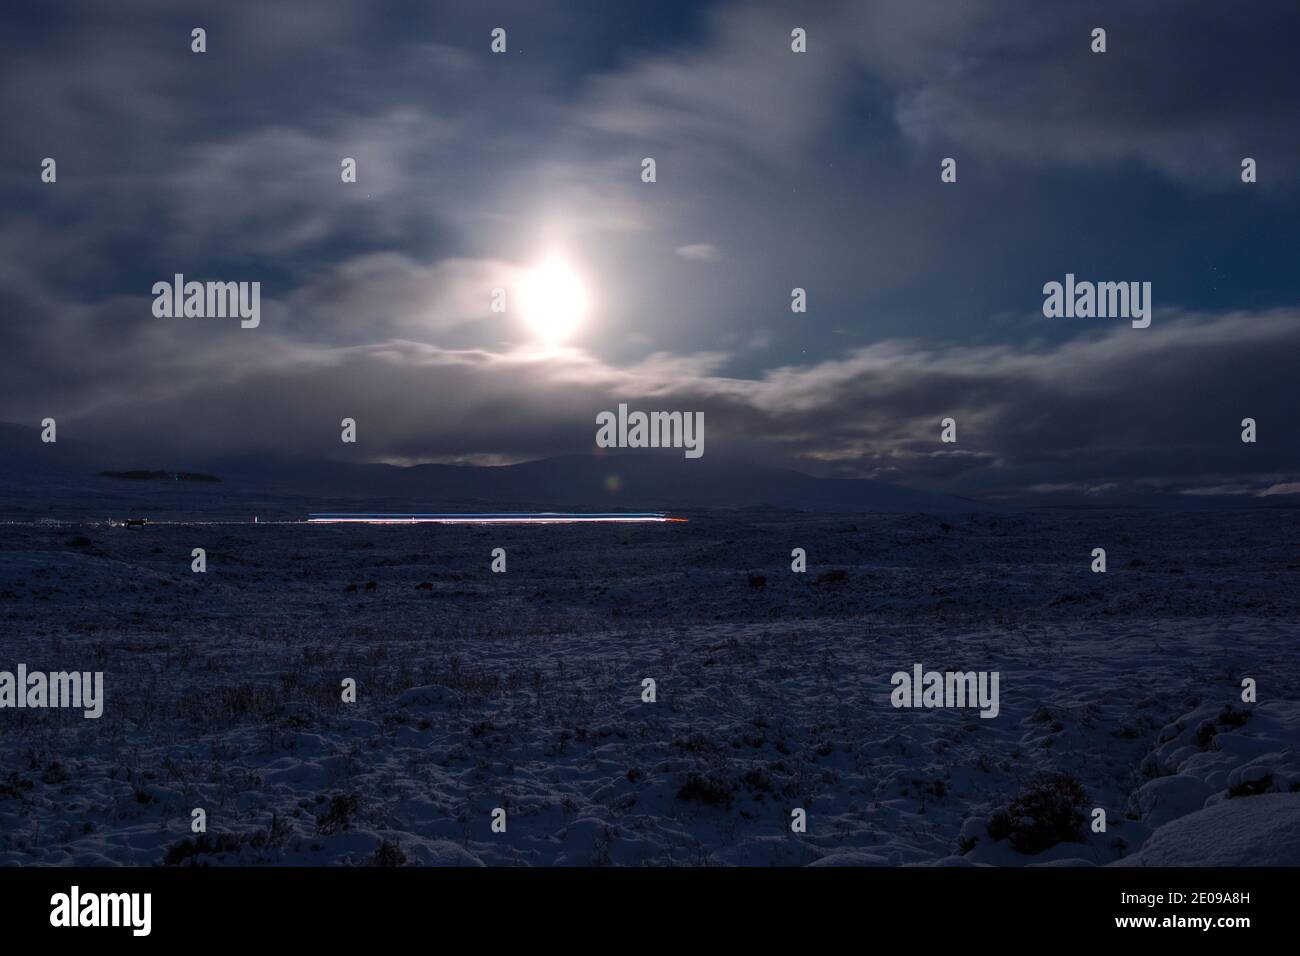 Glencoe, Escocia, Reino Unido. 30 de diciembre de 2020. En la foto: Glencoe iluminado bajo el brillo de la luna llena menguante. La nieve refleja la luz causando una imagen nocturna dramática. La nieve amarilla advierte en su lugar como más nieve con temperaturas de congelación se espera de nuevo durante la noche. Crédito: Colin Fisher/Alamy Live News Foto de stock